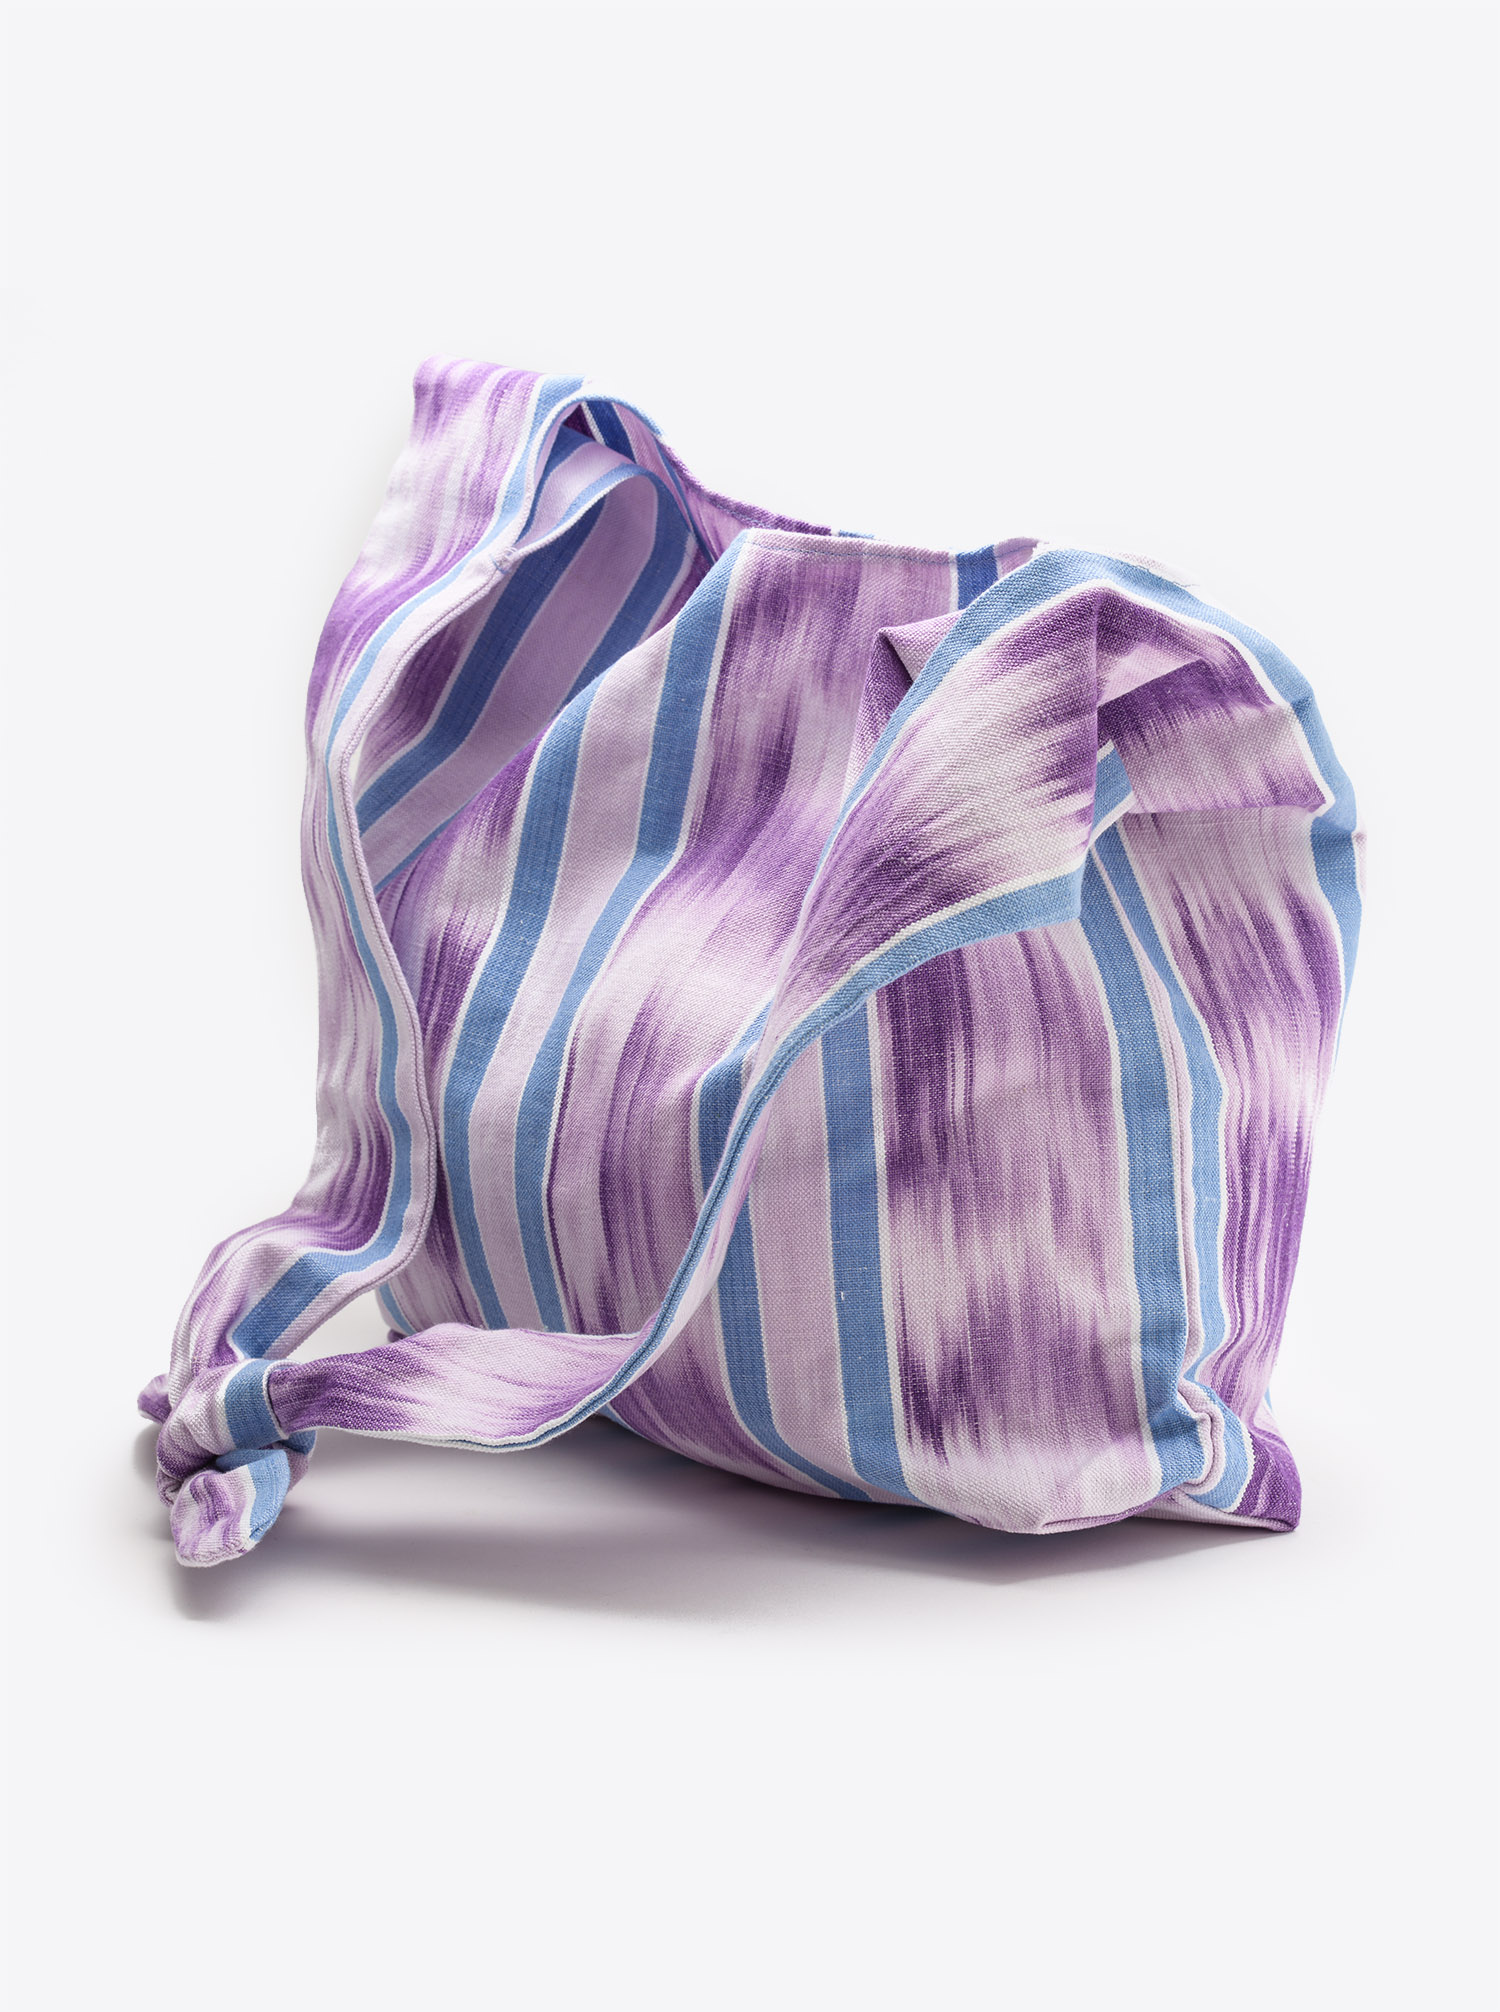 Bag Furoshiki Ikat purple blue